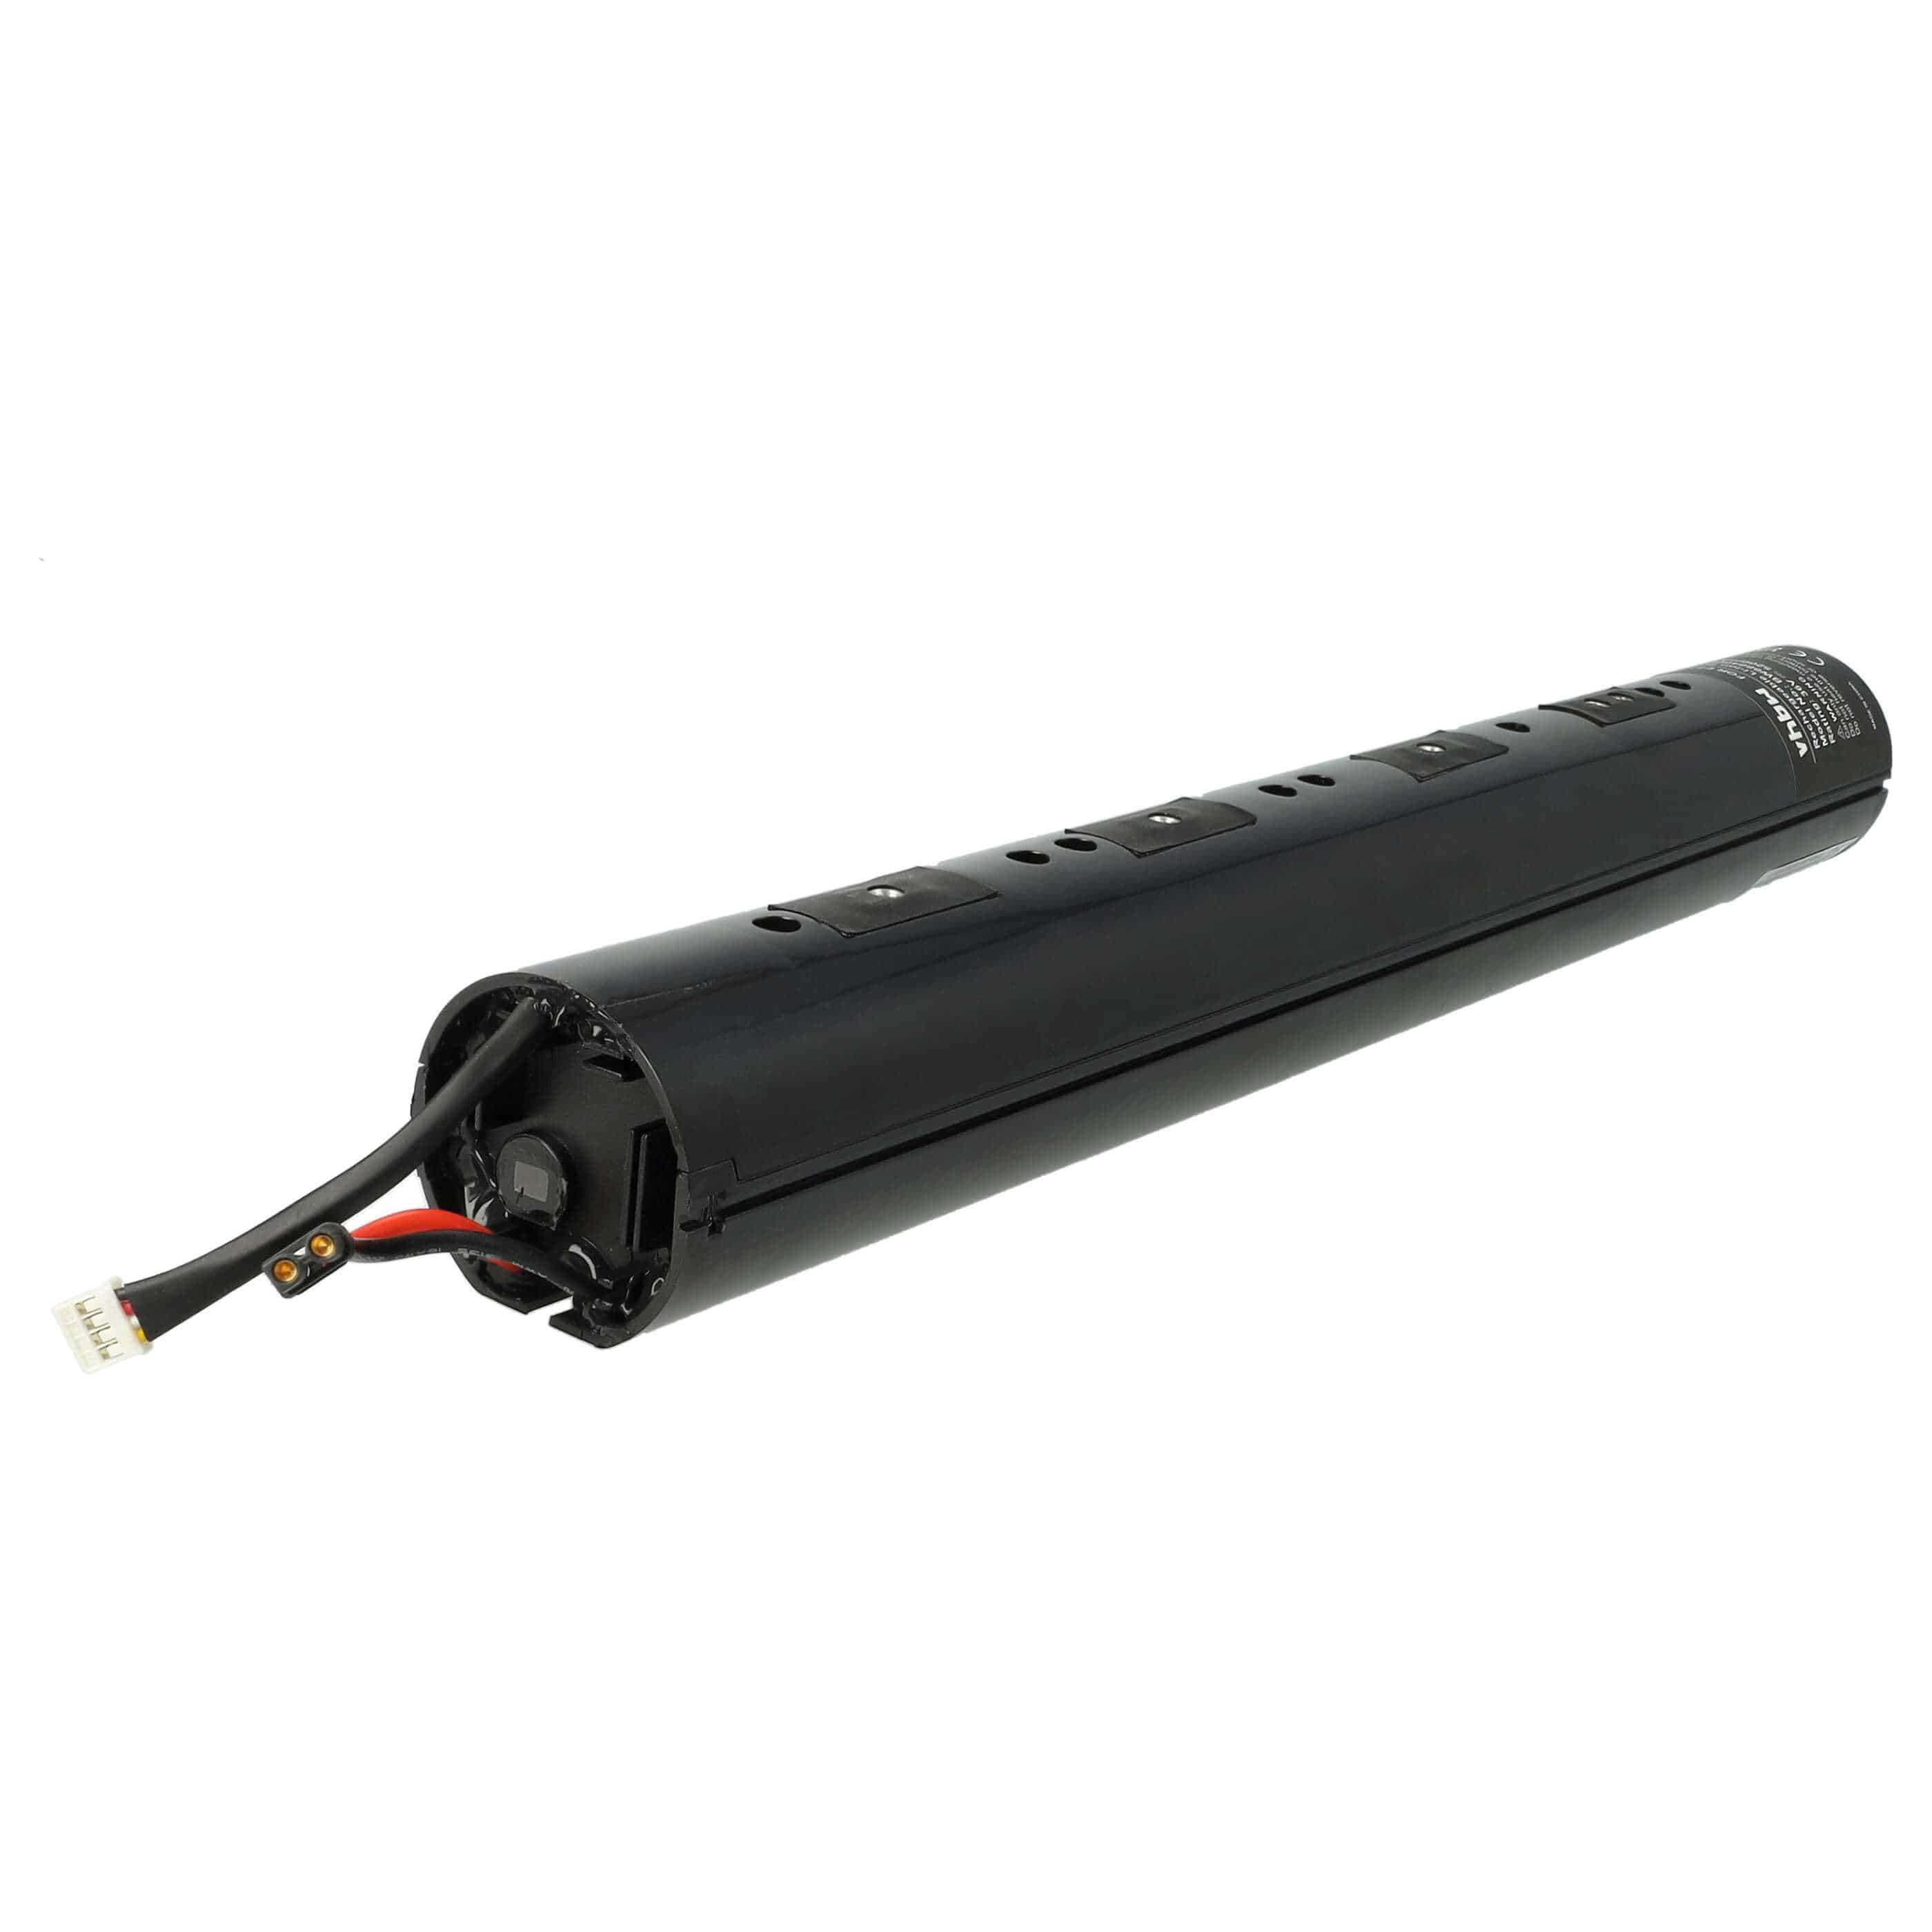 Batterie remplace Segway Ninebot NEB1002-H1, NEB1002-H pour trottinette électrique - 5200mAh 36V Li-ion